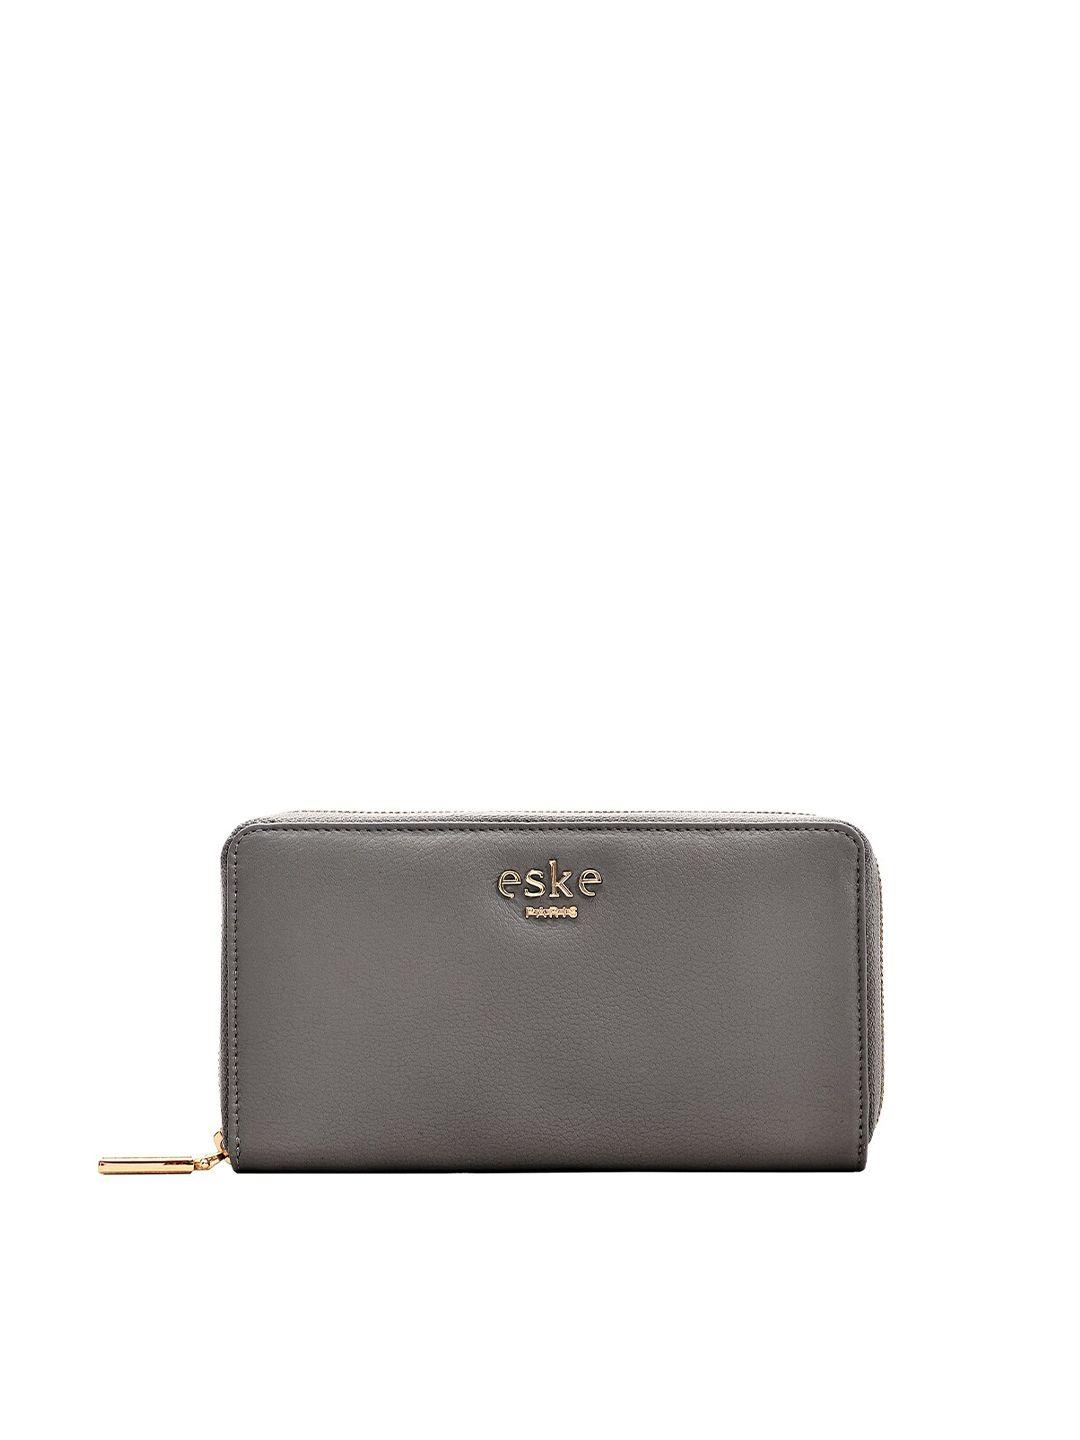 eske women grey leather zip around wallet